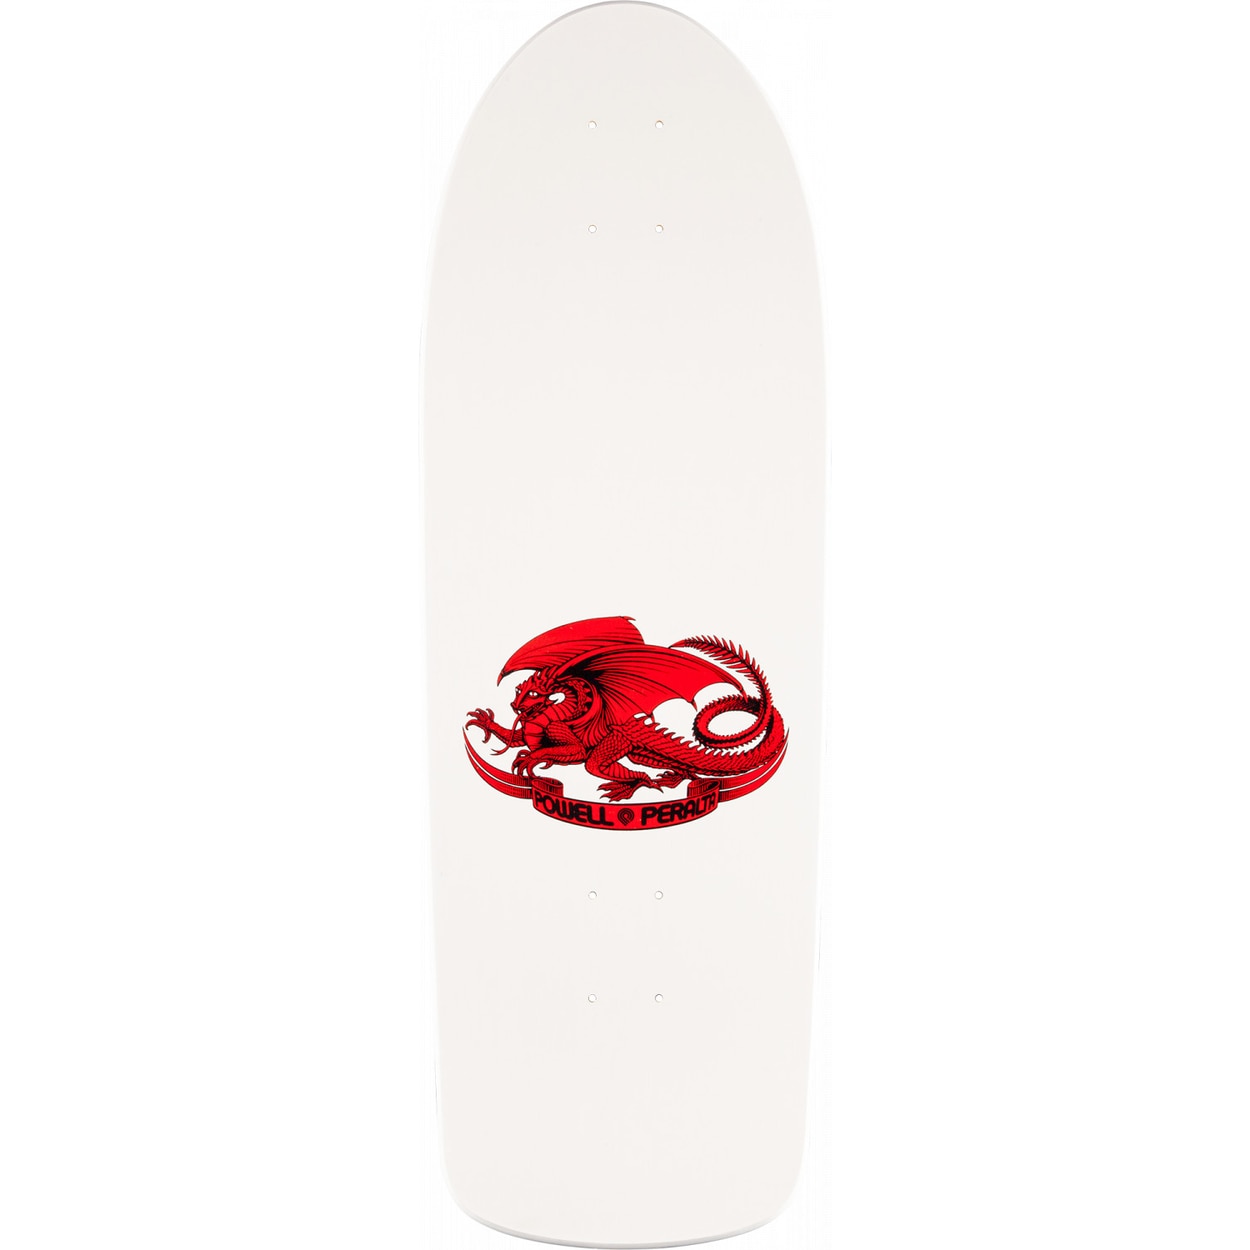 Powell Peralta OG Ripper Skateboard Deck - White/Red